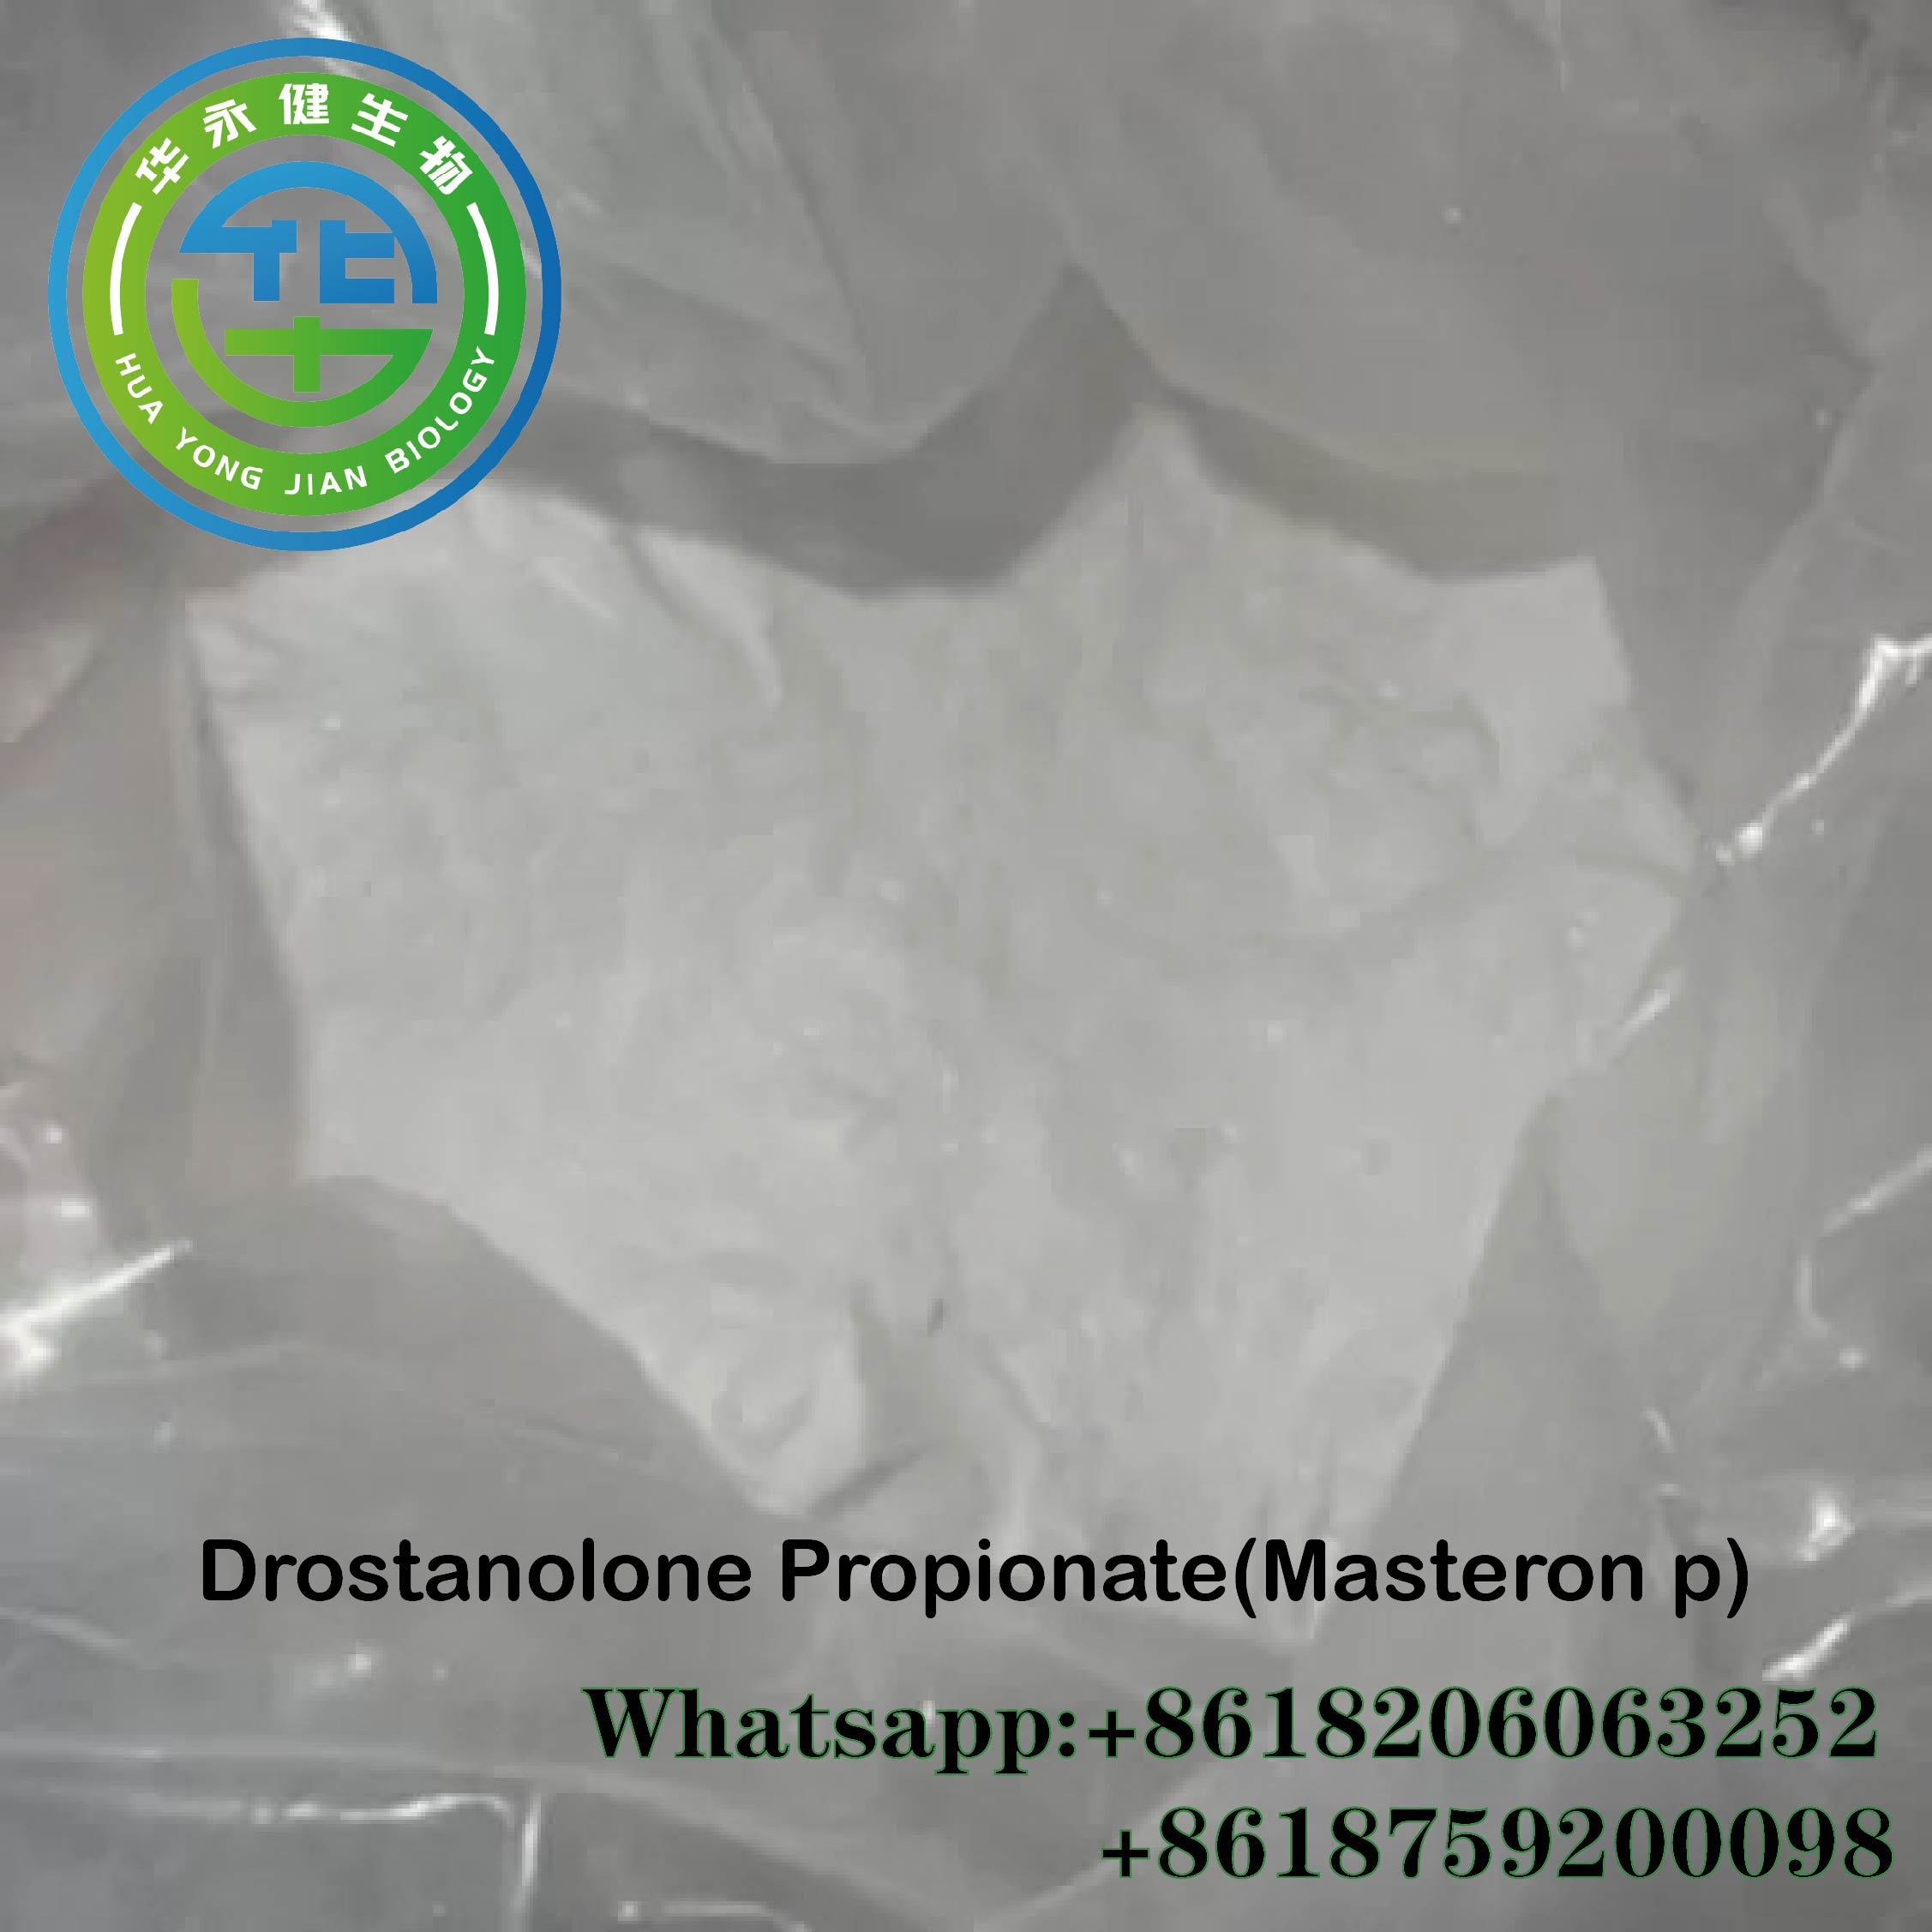 صحت مند Drostanolone Propionate CasNO.521-12-0 Masteron P Steroid Anabolic Muscle Building Featured Image